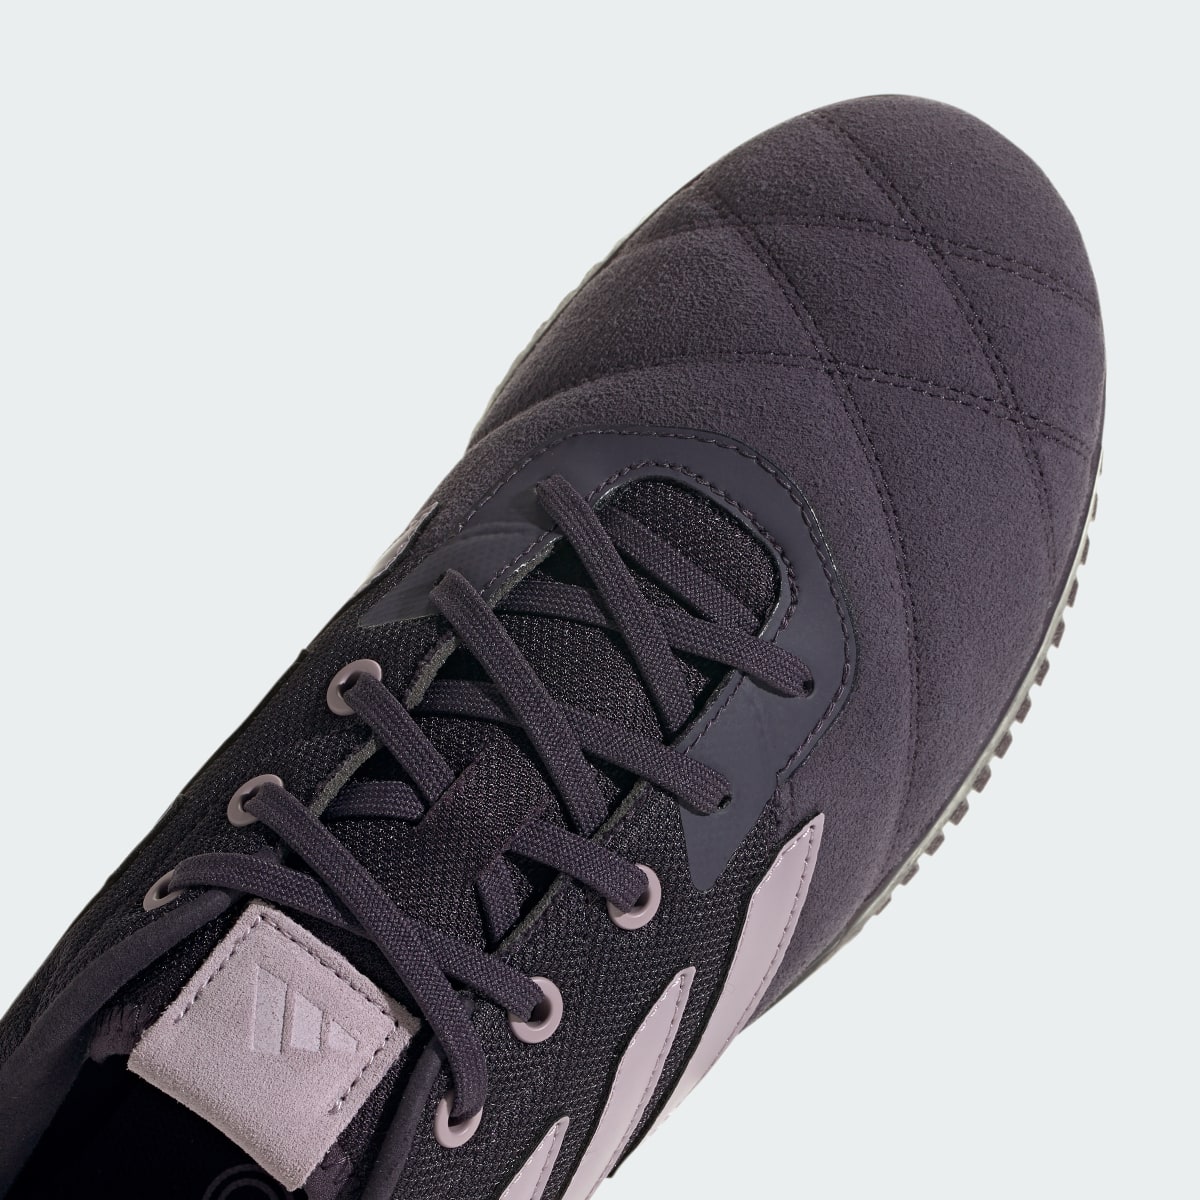 Adidas Copa Gloro Indoor Boots. 9